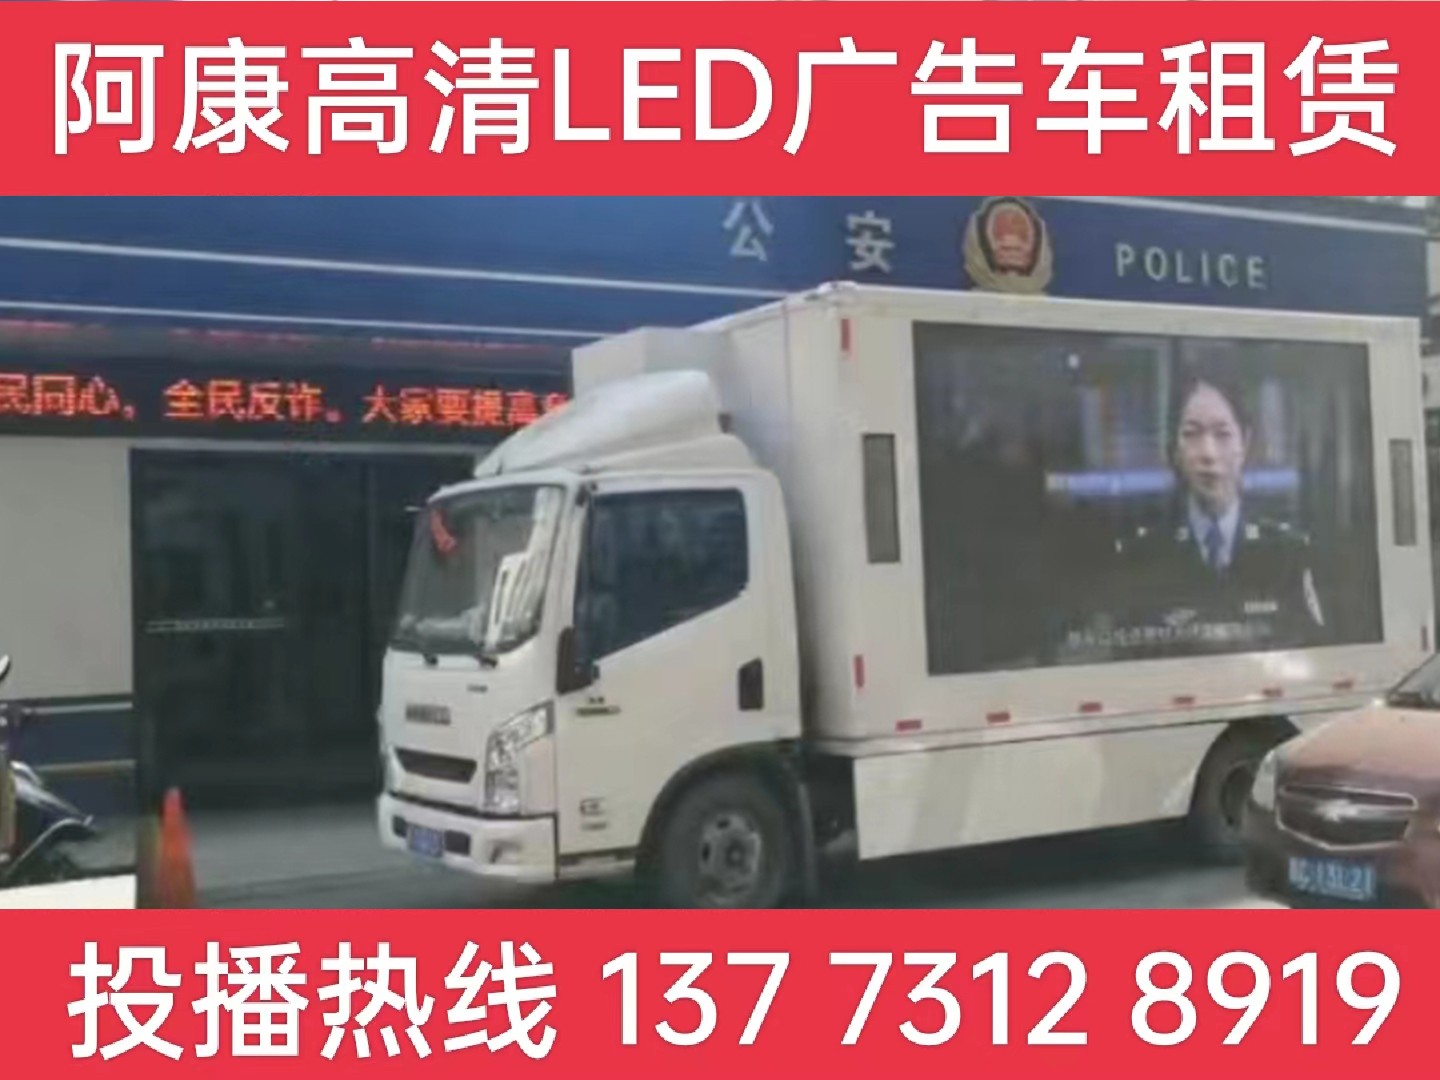 滁州LED广告车租赁-反诈宣传